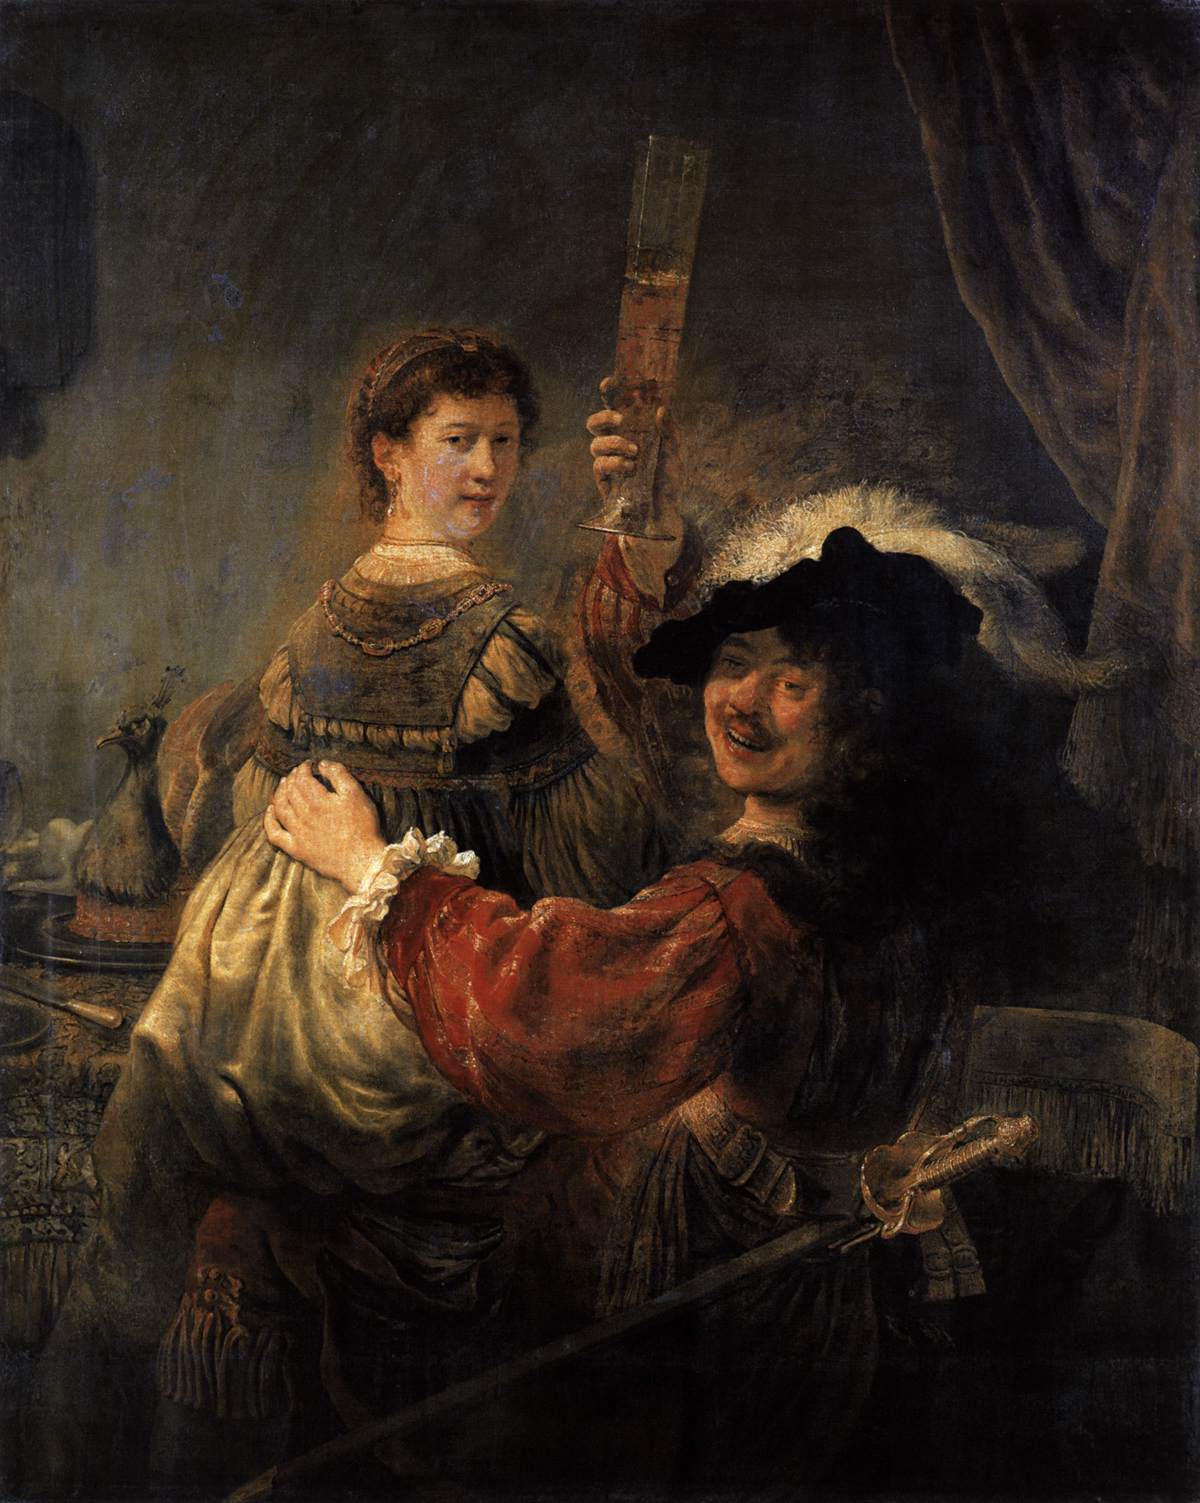 Rembrandt e Saskia nella scena del figlio prodigo nella taverna